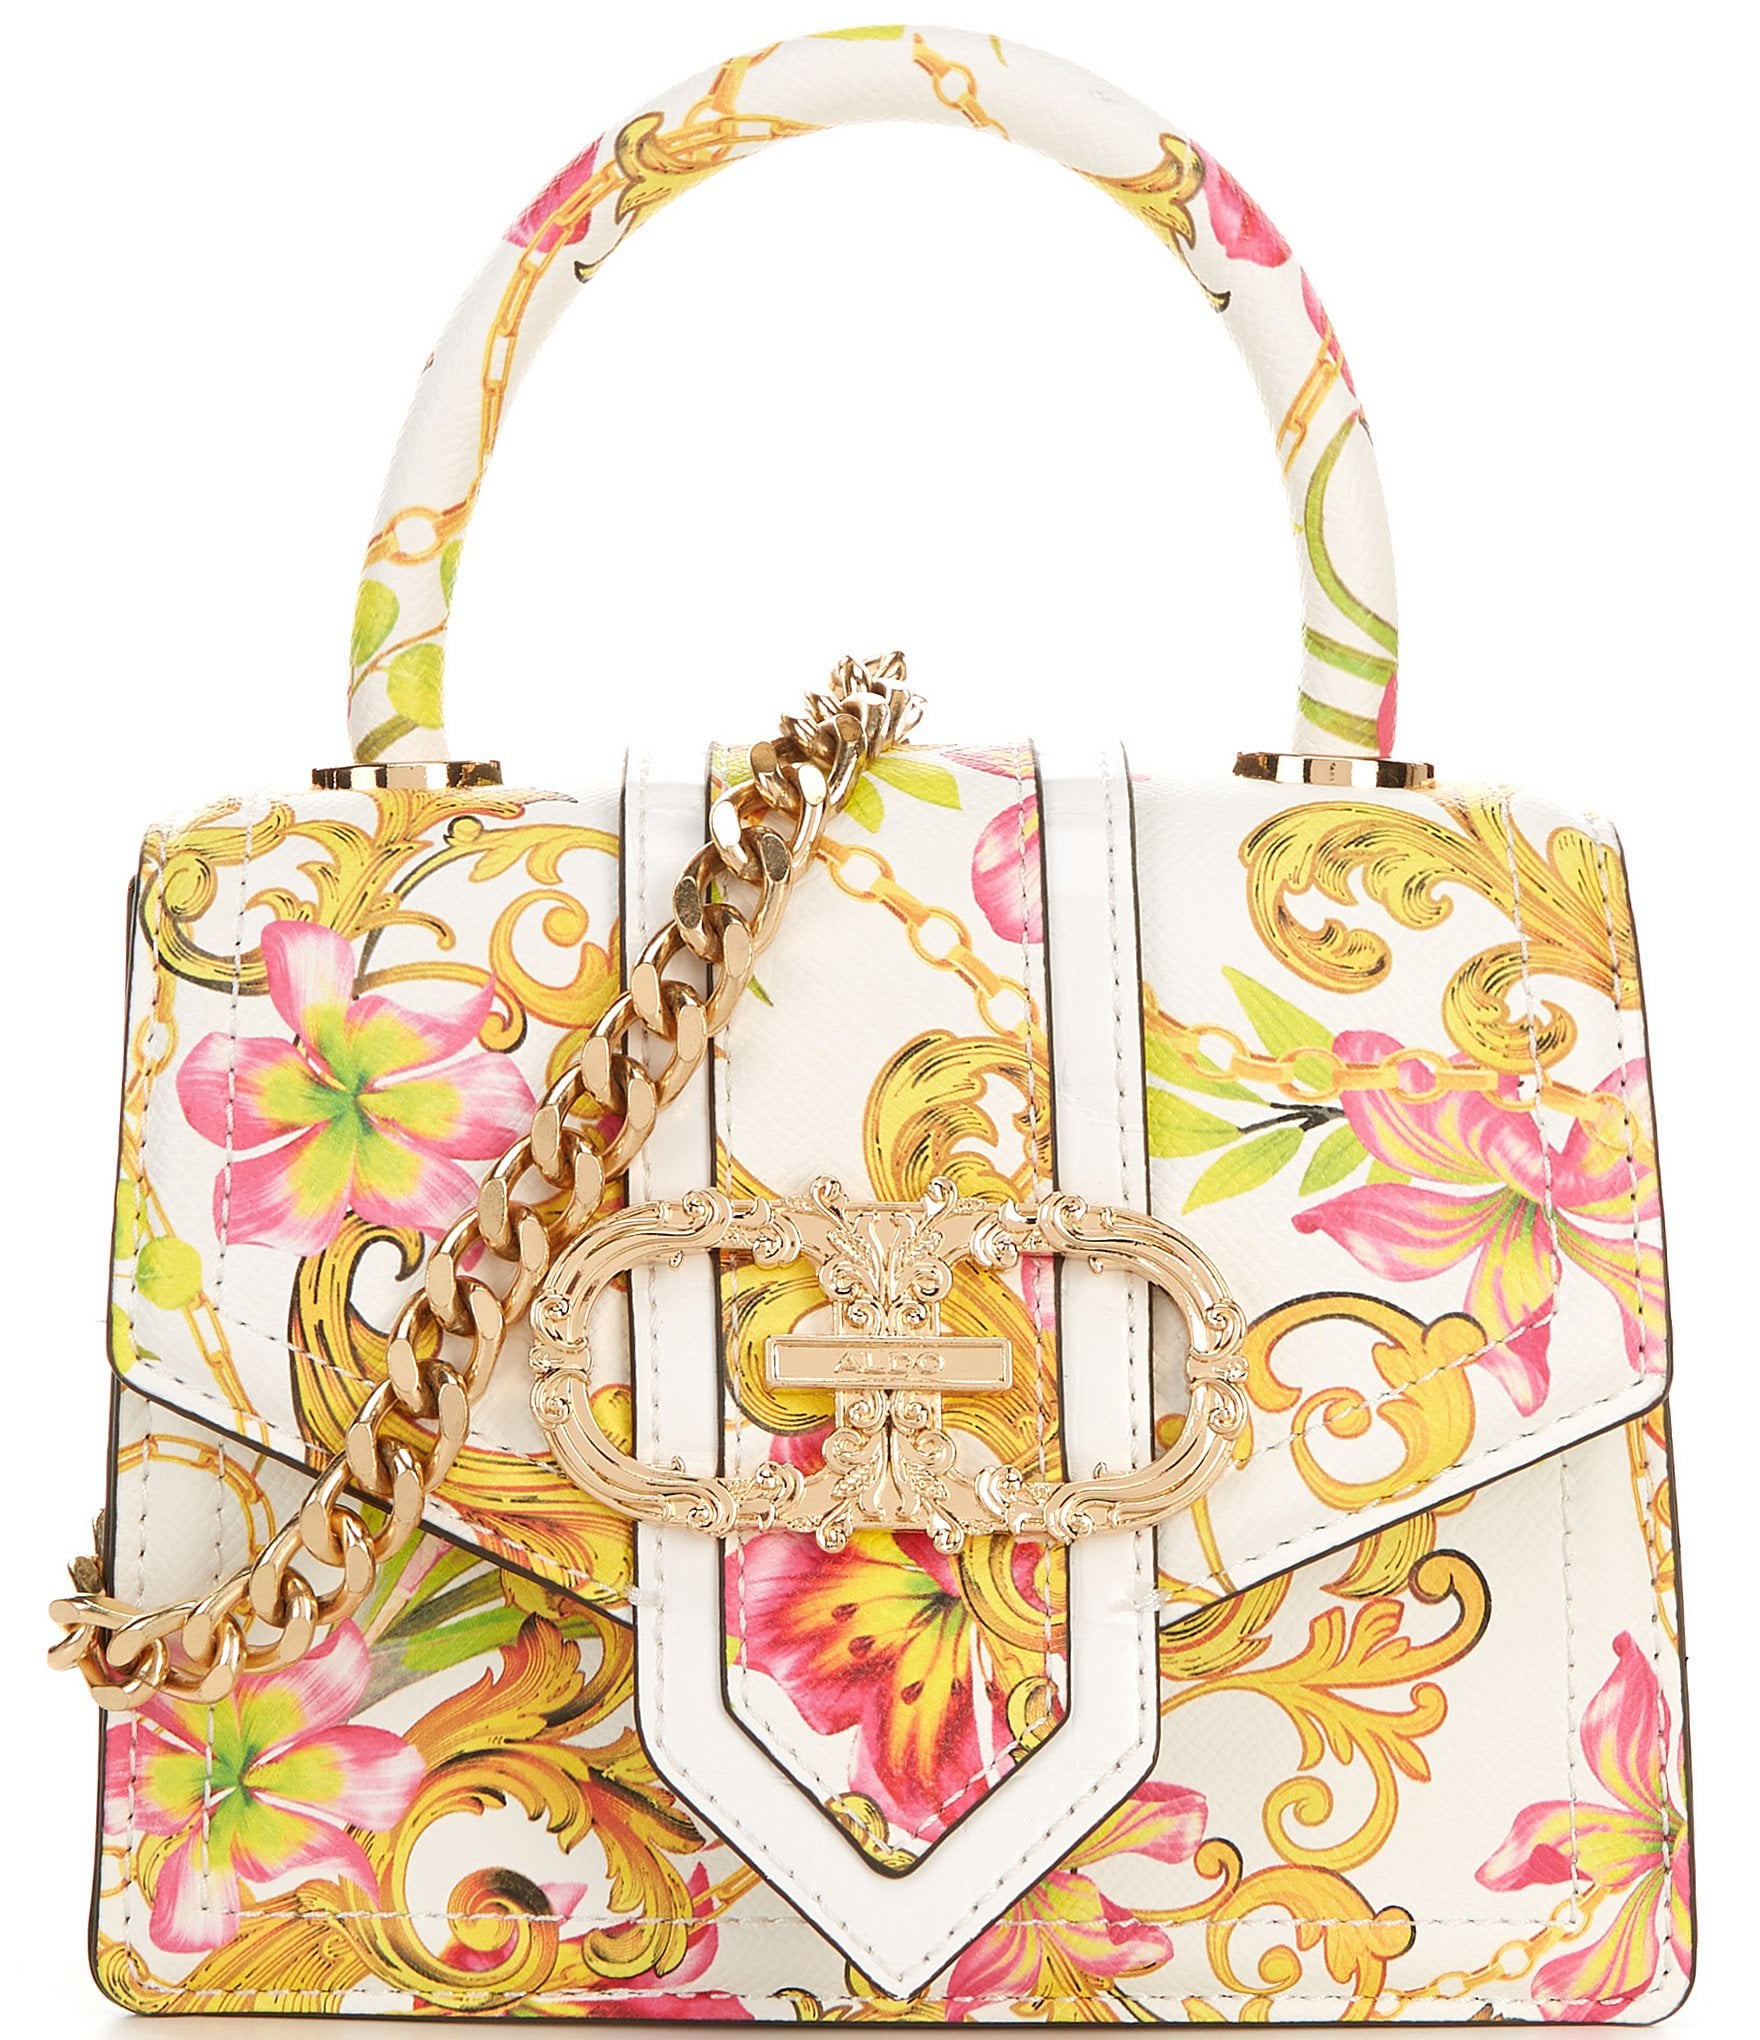 Buy Gold Handbags for Women by Aldo Online | Ajio.com